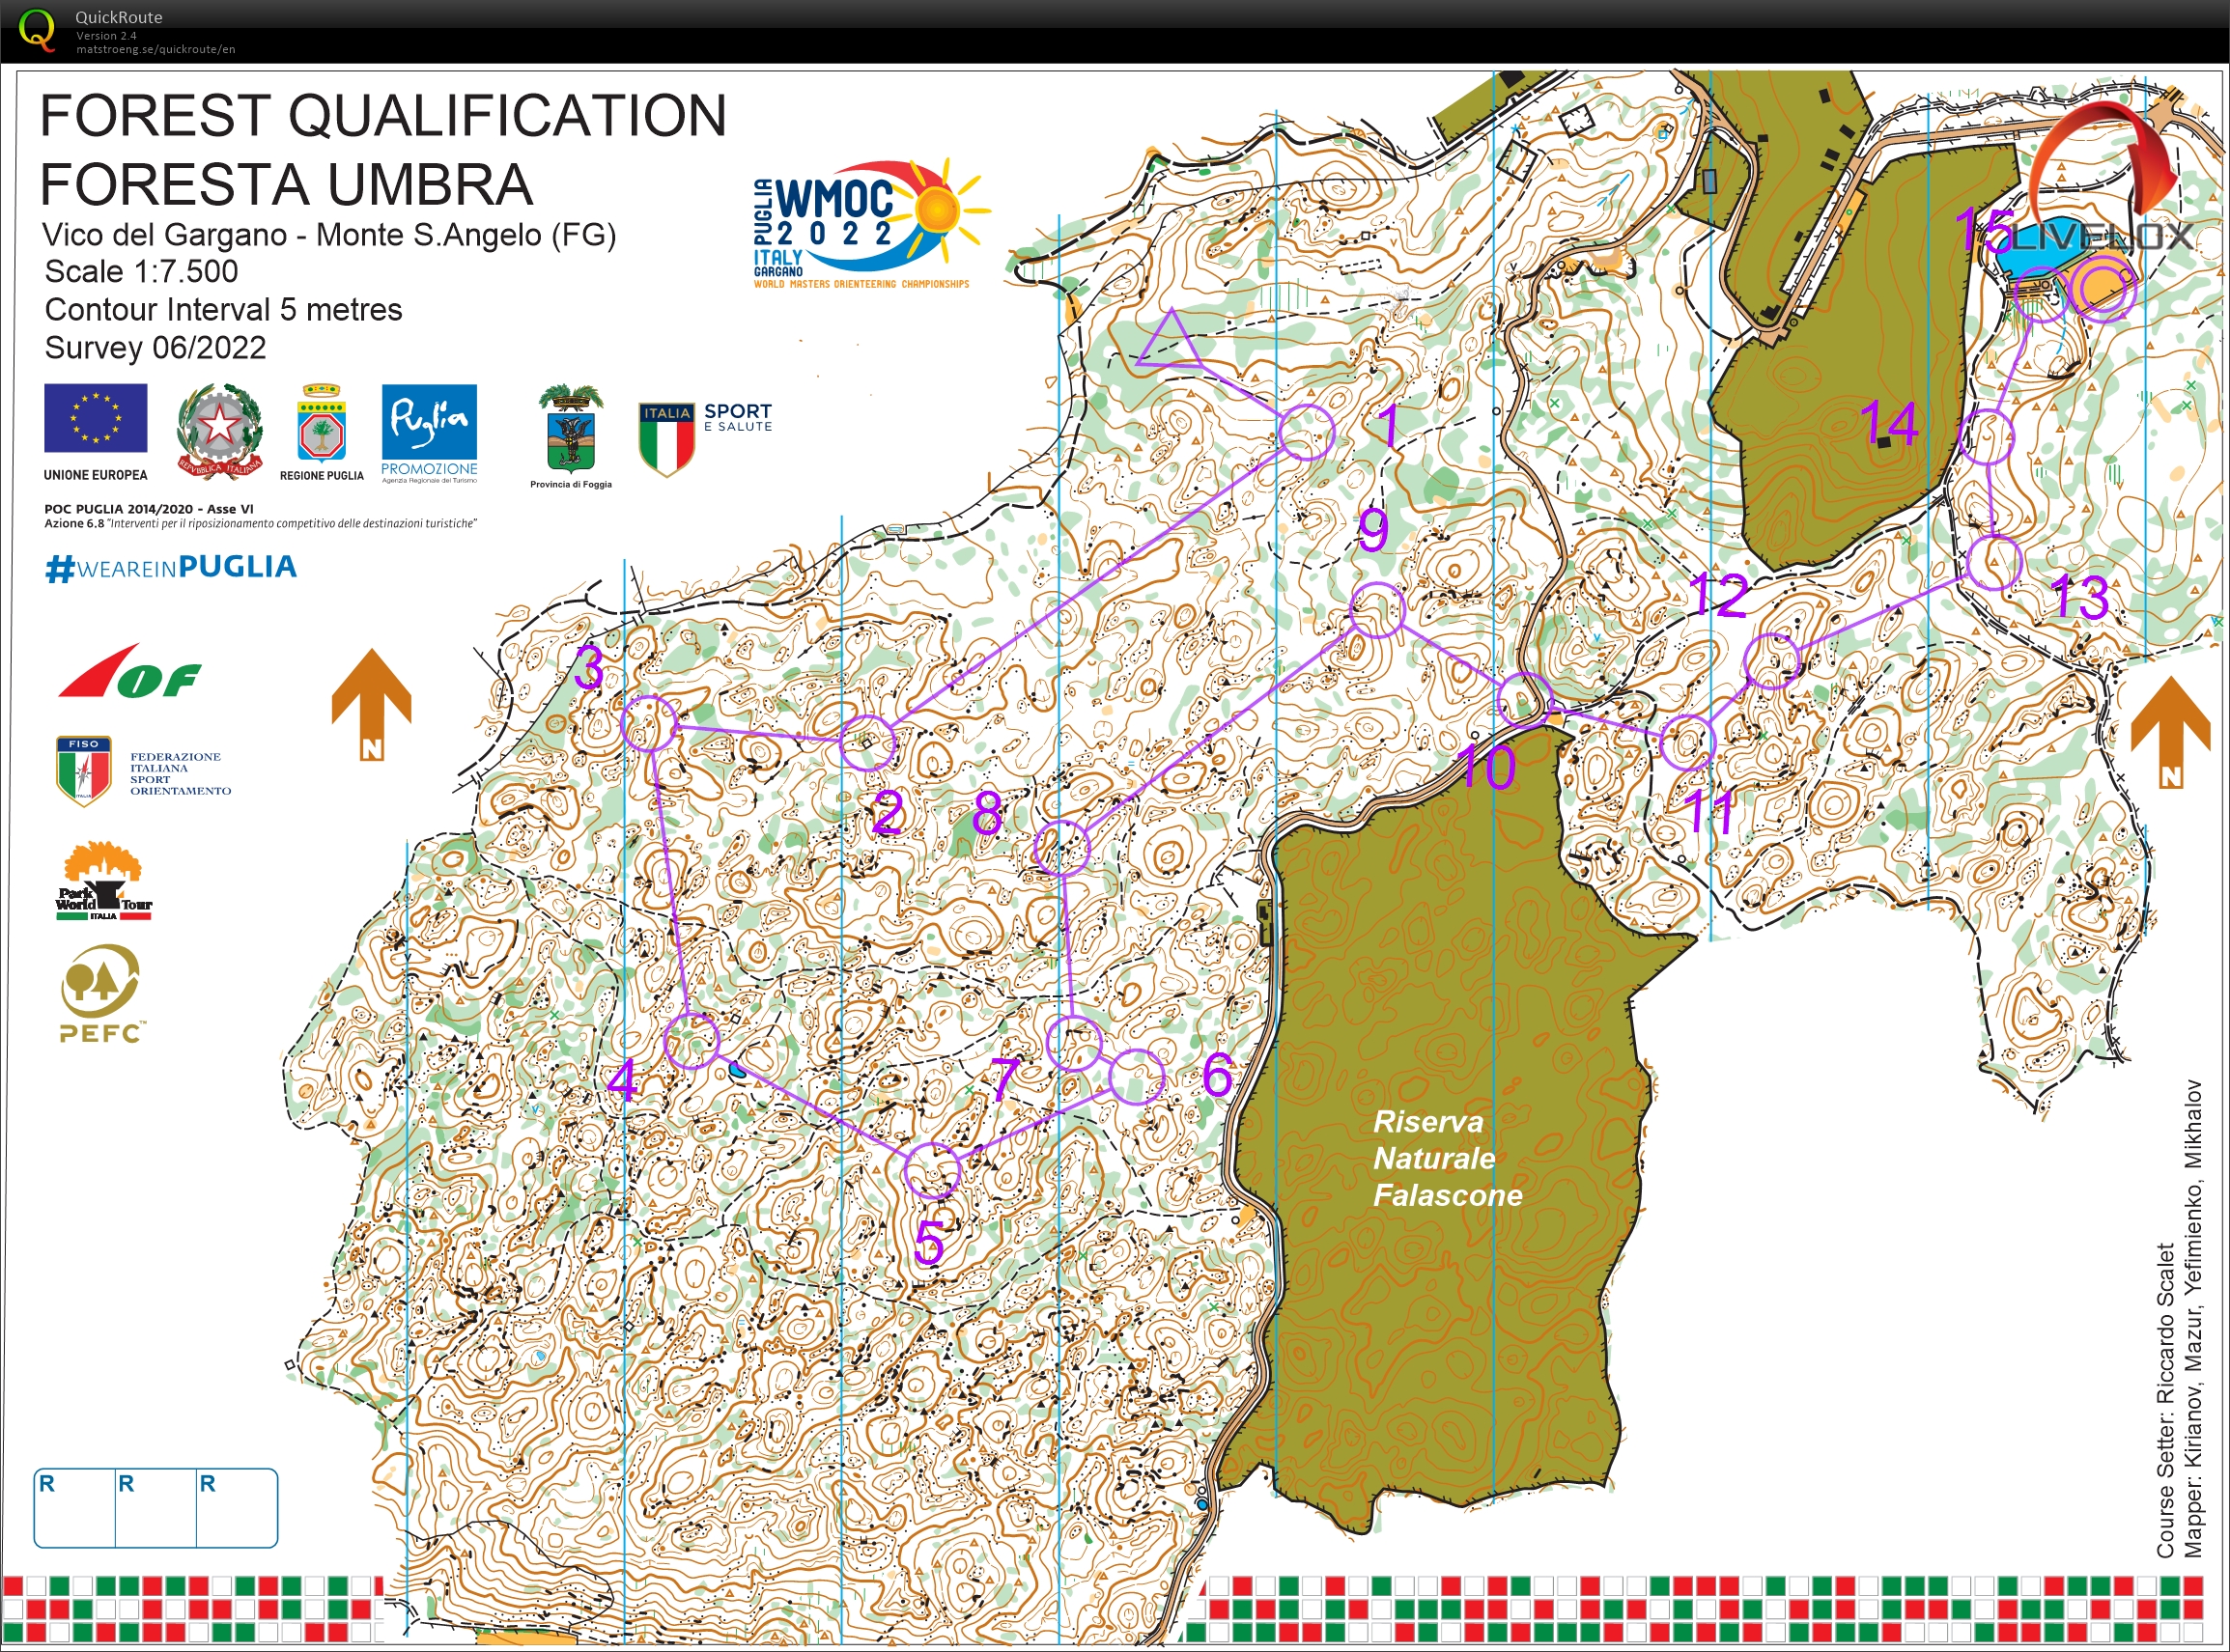 WMOC, Foresta Umbra, Italia, Skogskvaifisering, M60-3 (13.07.2022)